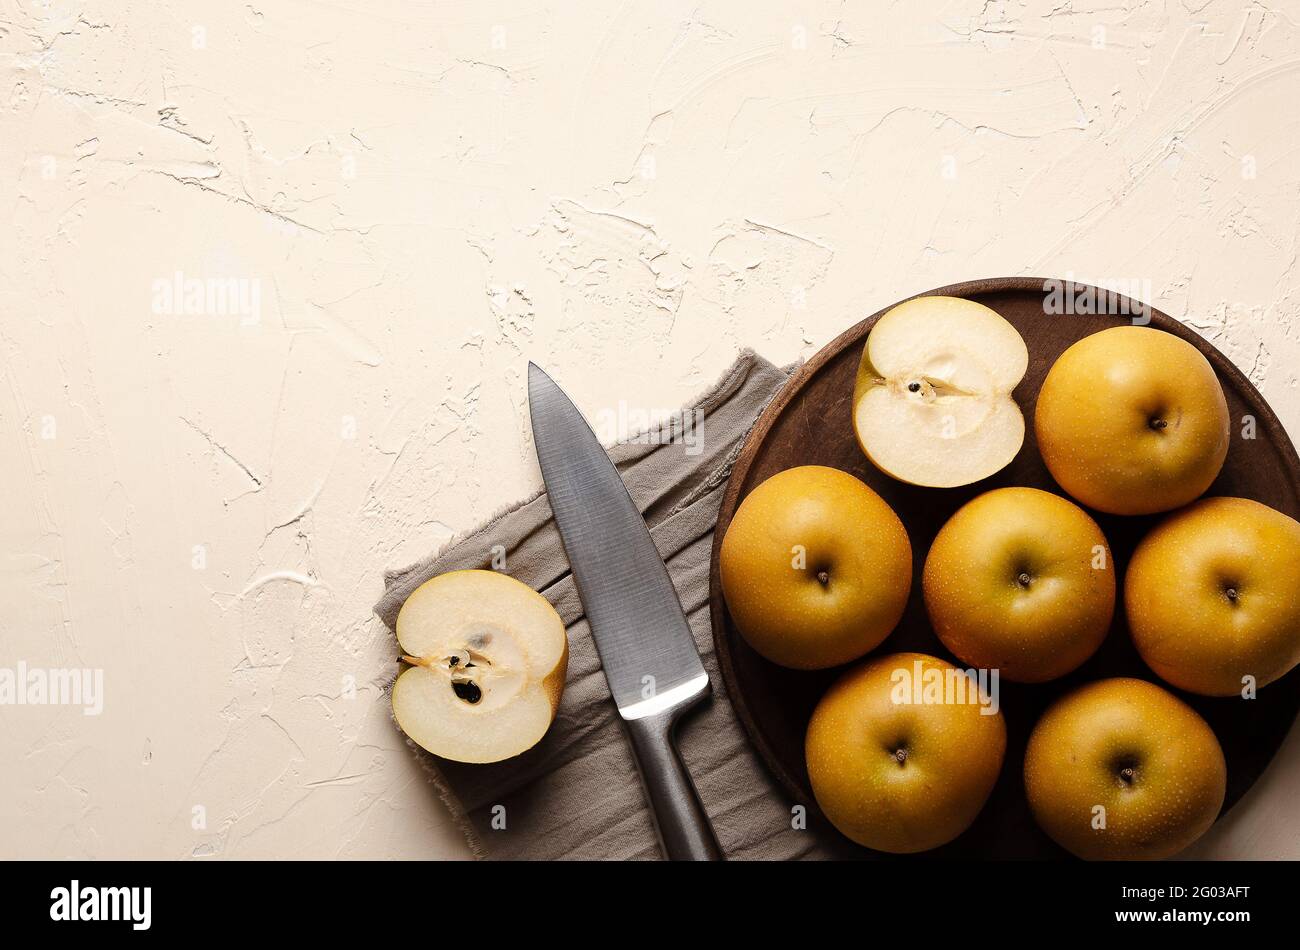 Asiatische Birnen mit einem silbernen Messer auf einem Holzteller und einem braunen Stück Tuch auf einem hellen Hintergrund. Stockfoto